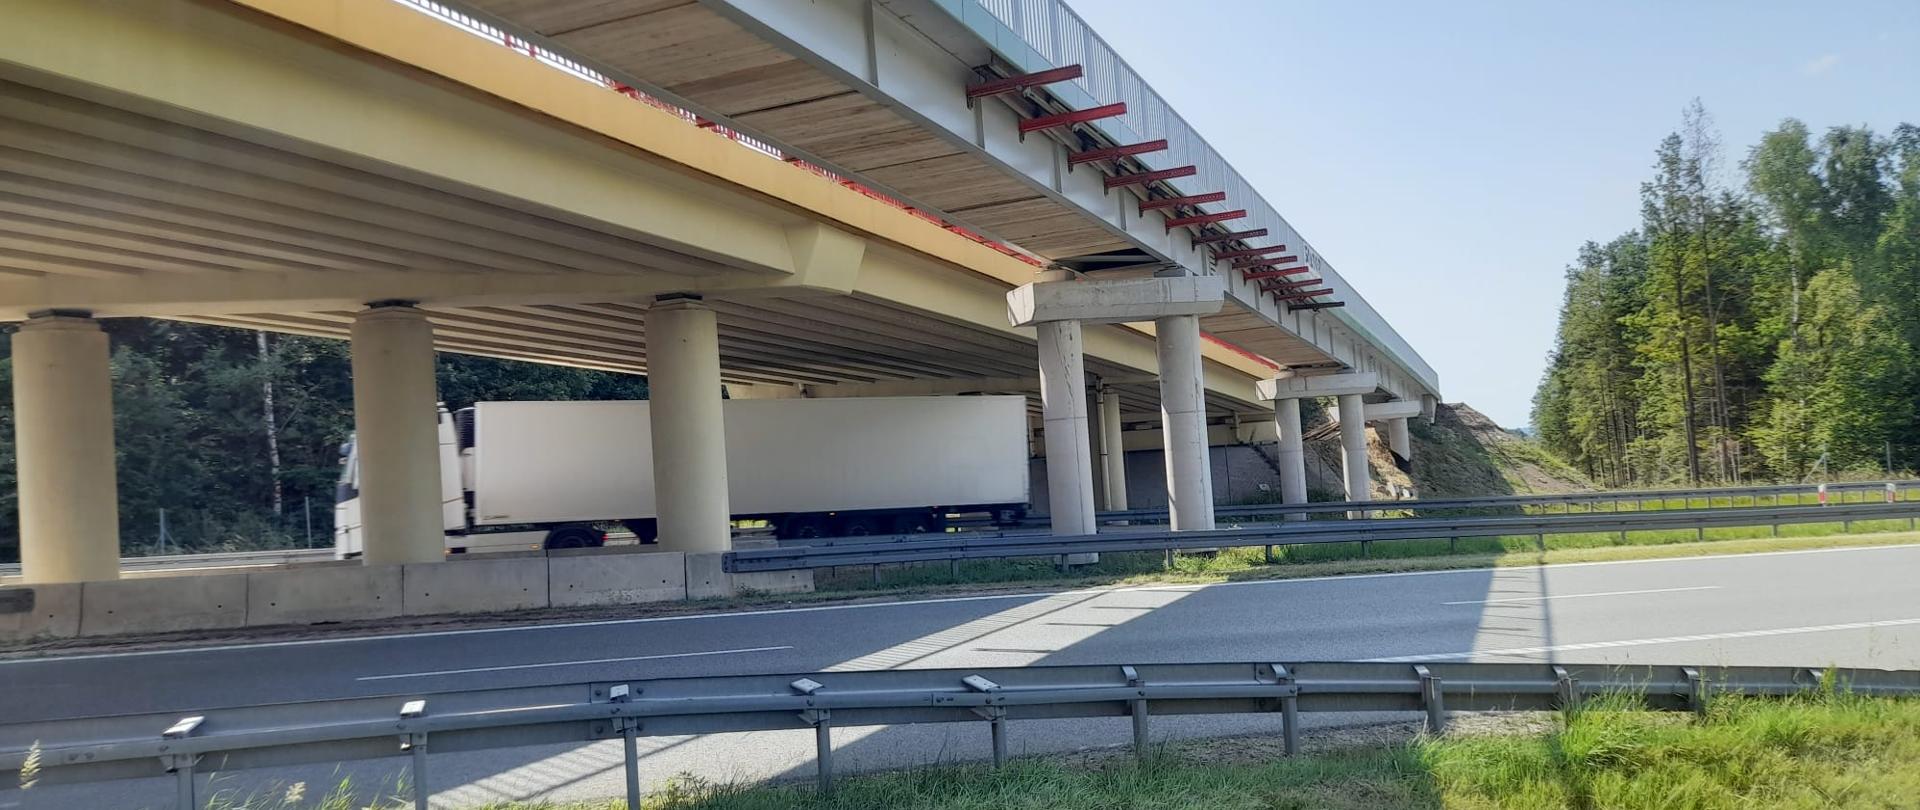 S7 obwodnica Kielc - wiadukt i kładka rowerowa nad dwujezdniową drogą. Pod obiektami mostowymi TIR z jasną naczepą 